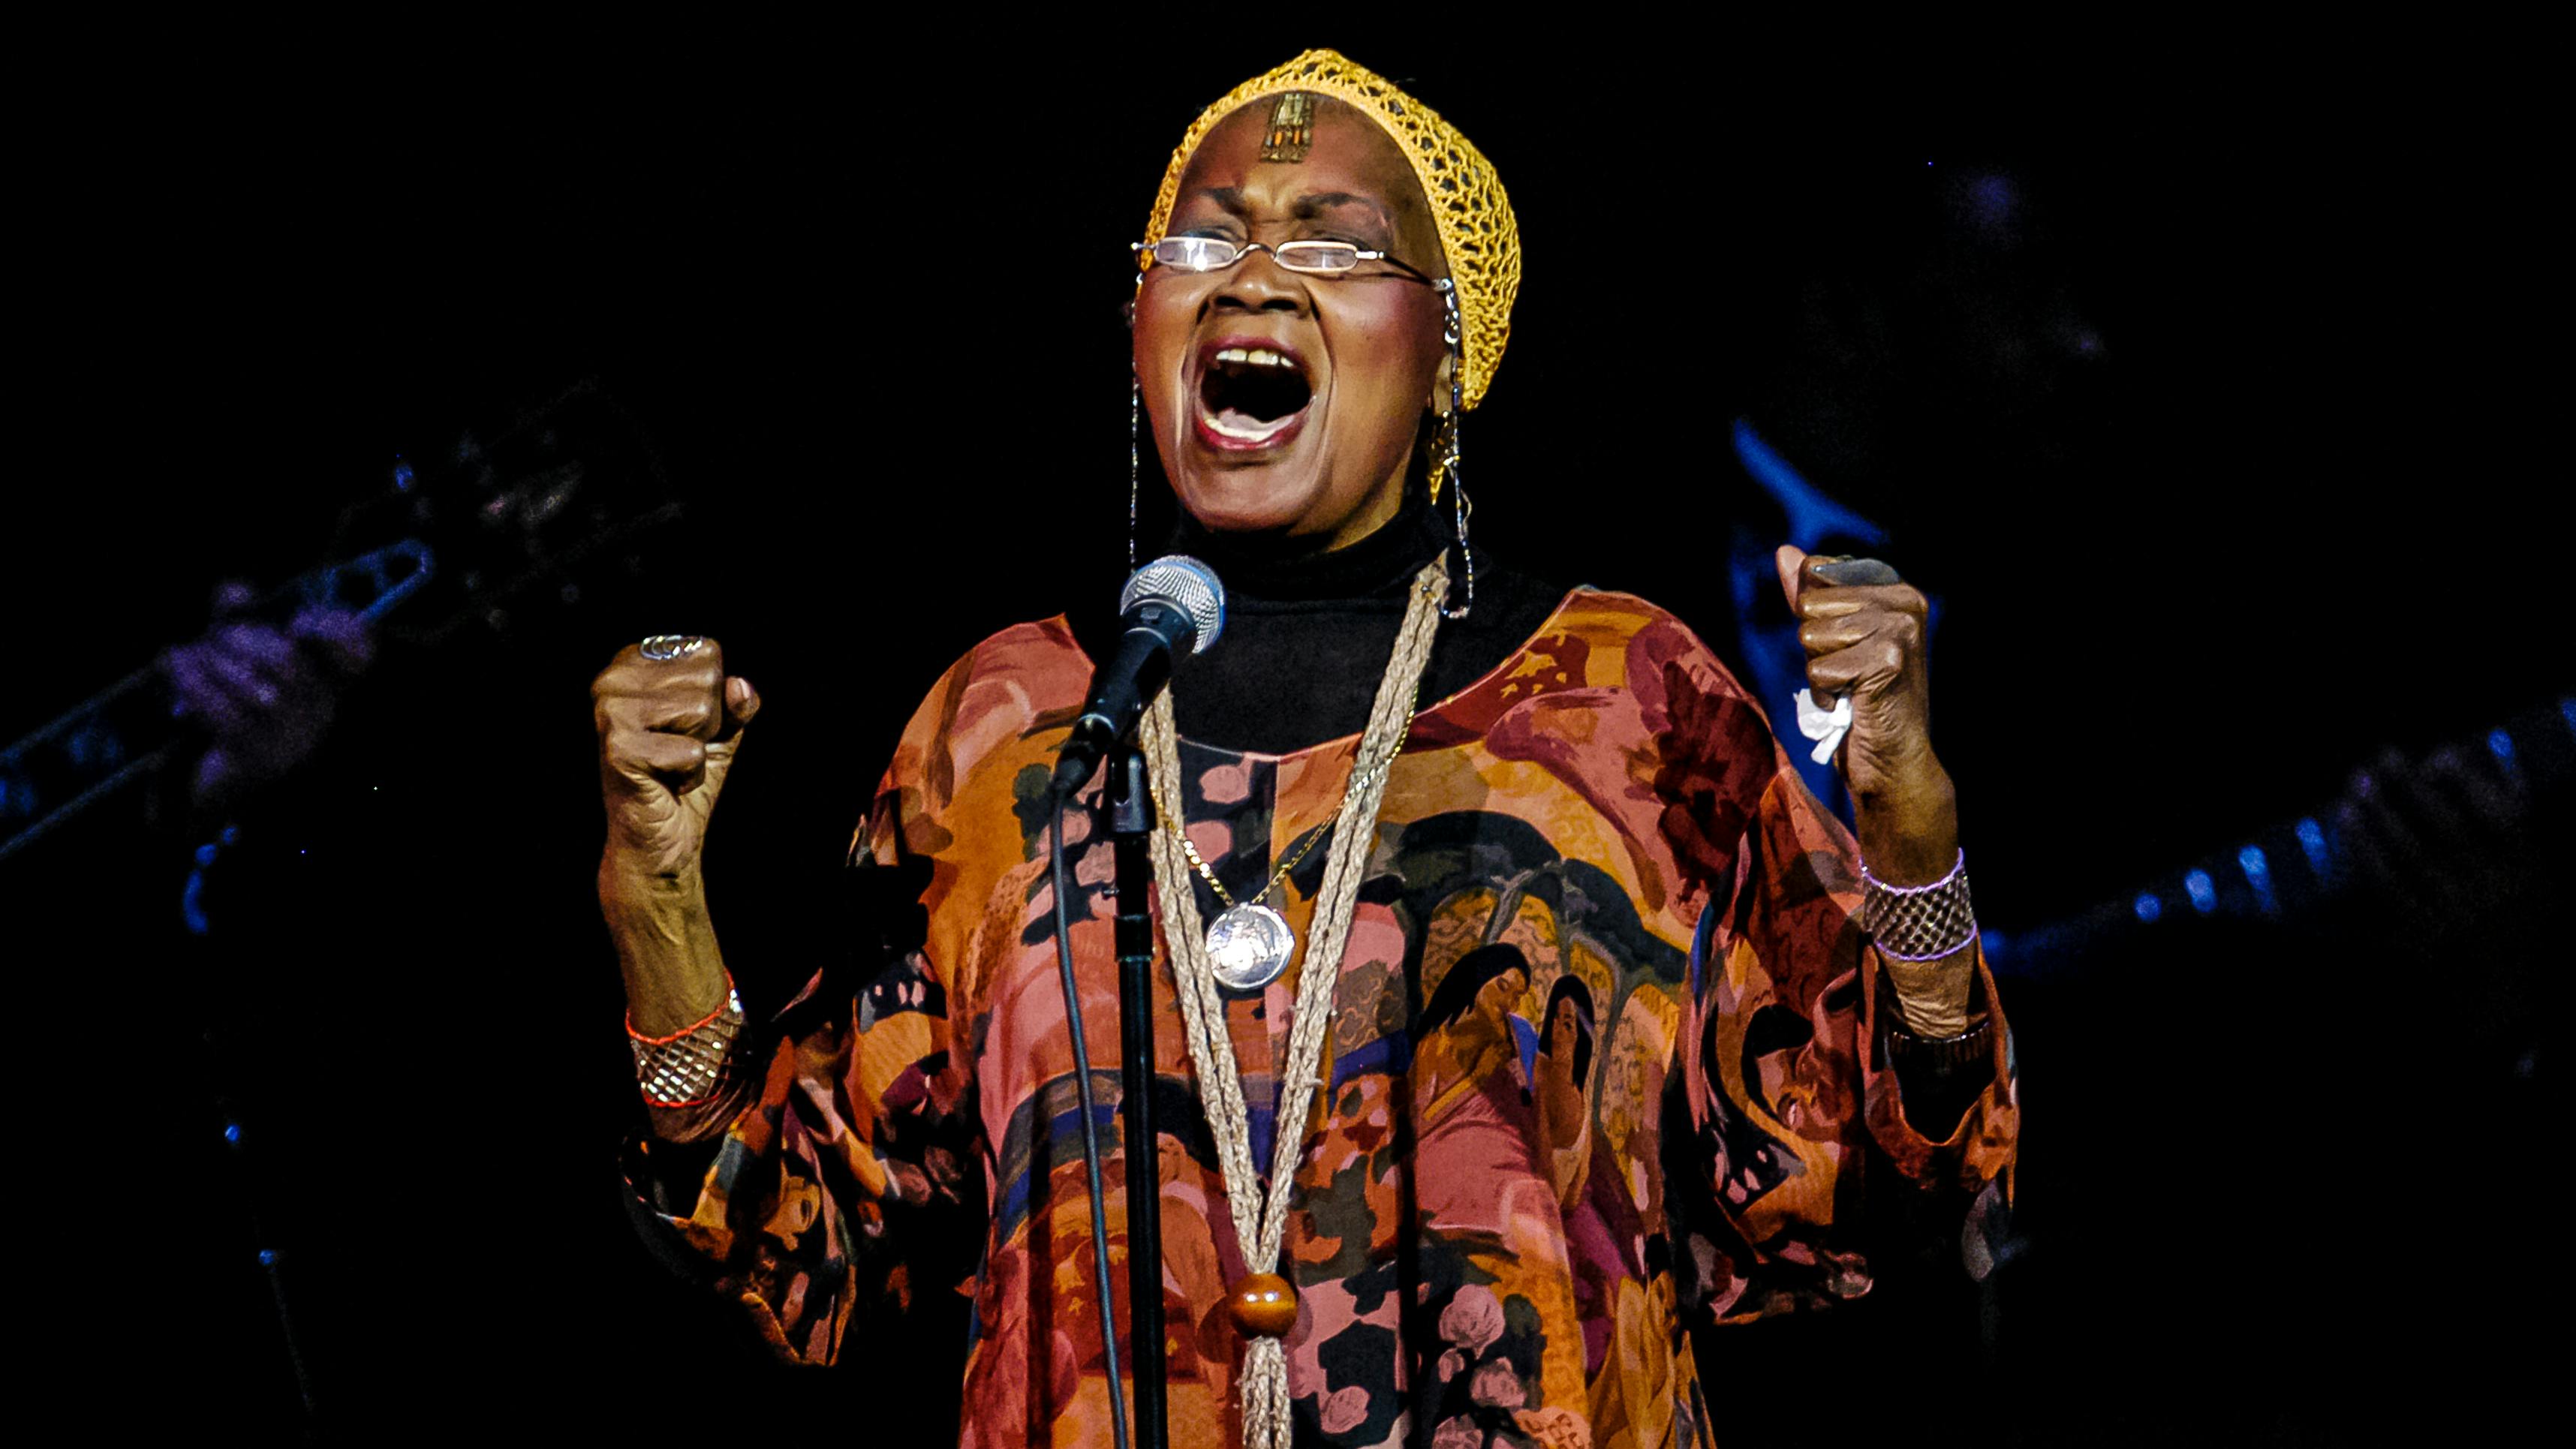 Die amerikanische Folksängerin und Bürgerrechtsaktivistin Odetta (alias Odetta Gordon, geboren als Odetta Holmes, 1930 - 2008) sing mit voller Stimme und Enthusiasmus.